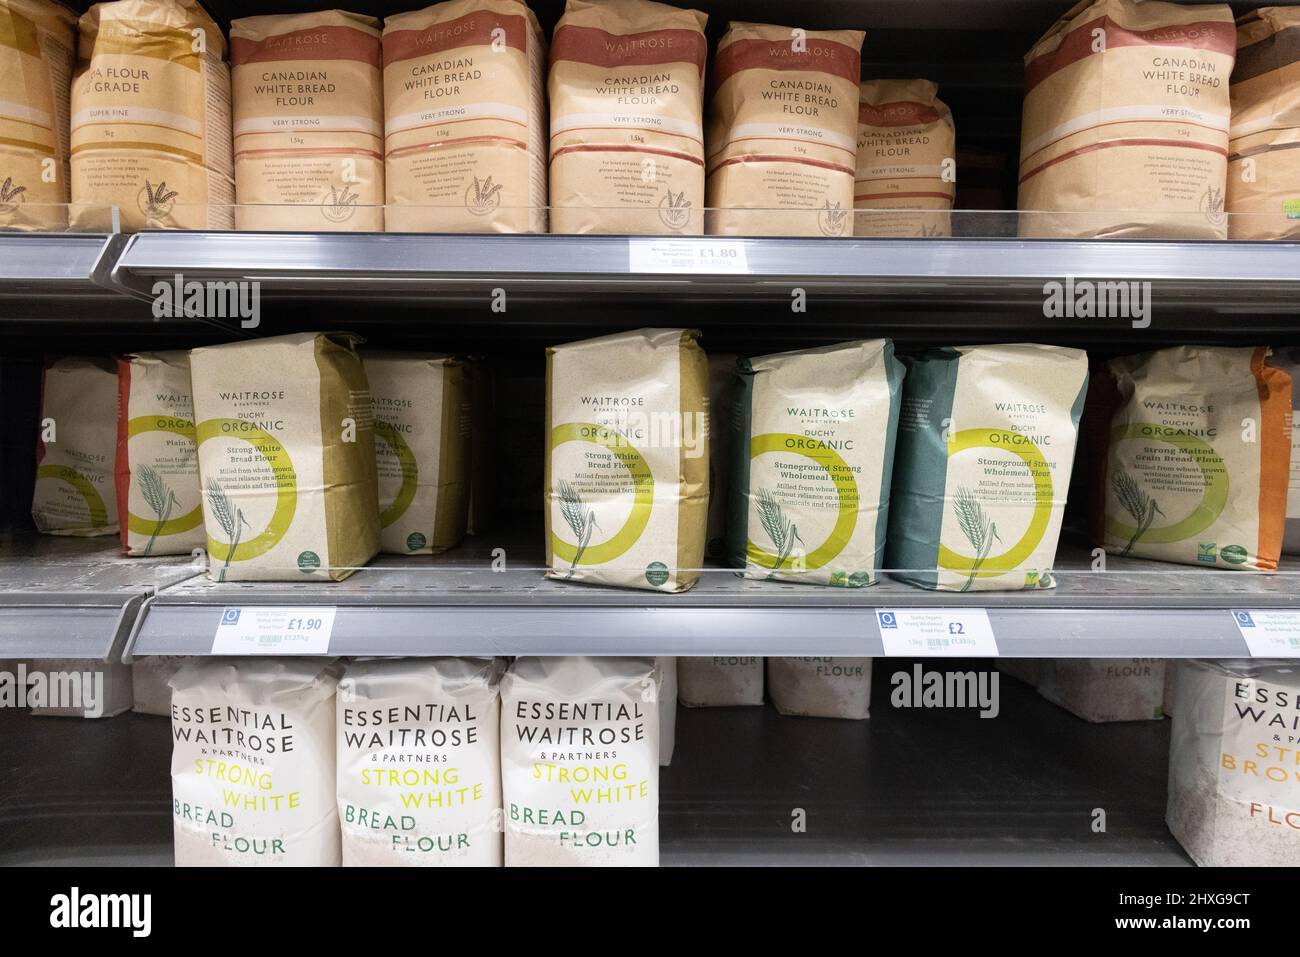 Harina de supermercado Reino Unido; Bolsas de harina para la venta en los estantes de los supermercados Waitrose en el Reino Unido Foto de stock